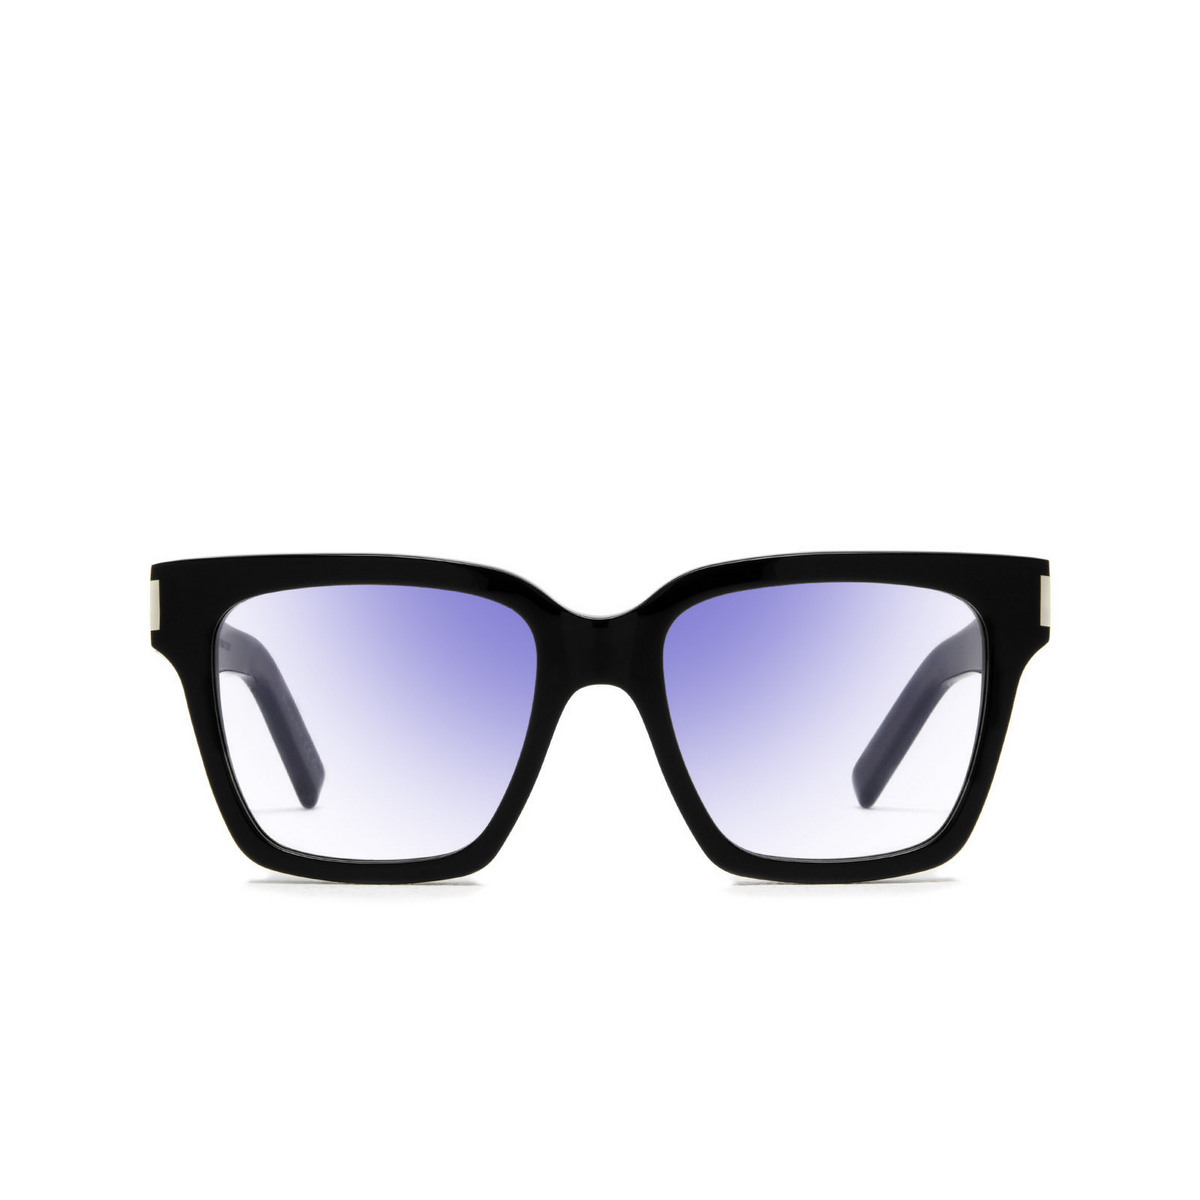 Saint Laurent® Square Sunglasses: SL 507 color Black 009 - front view.